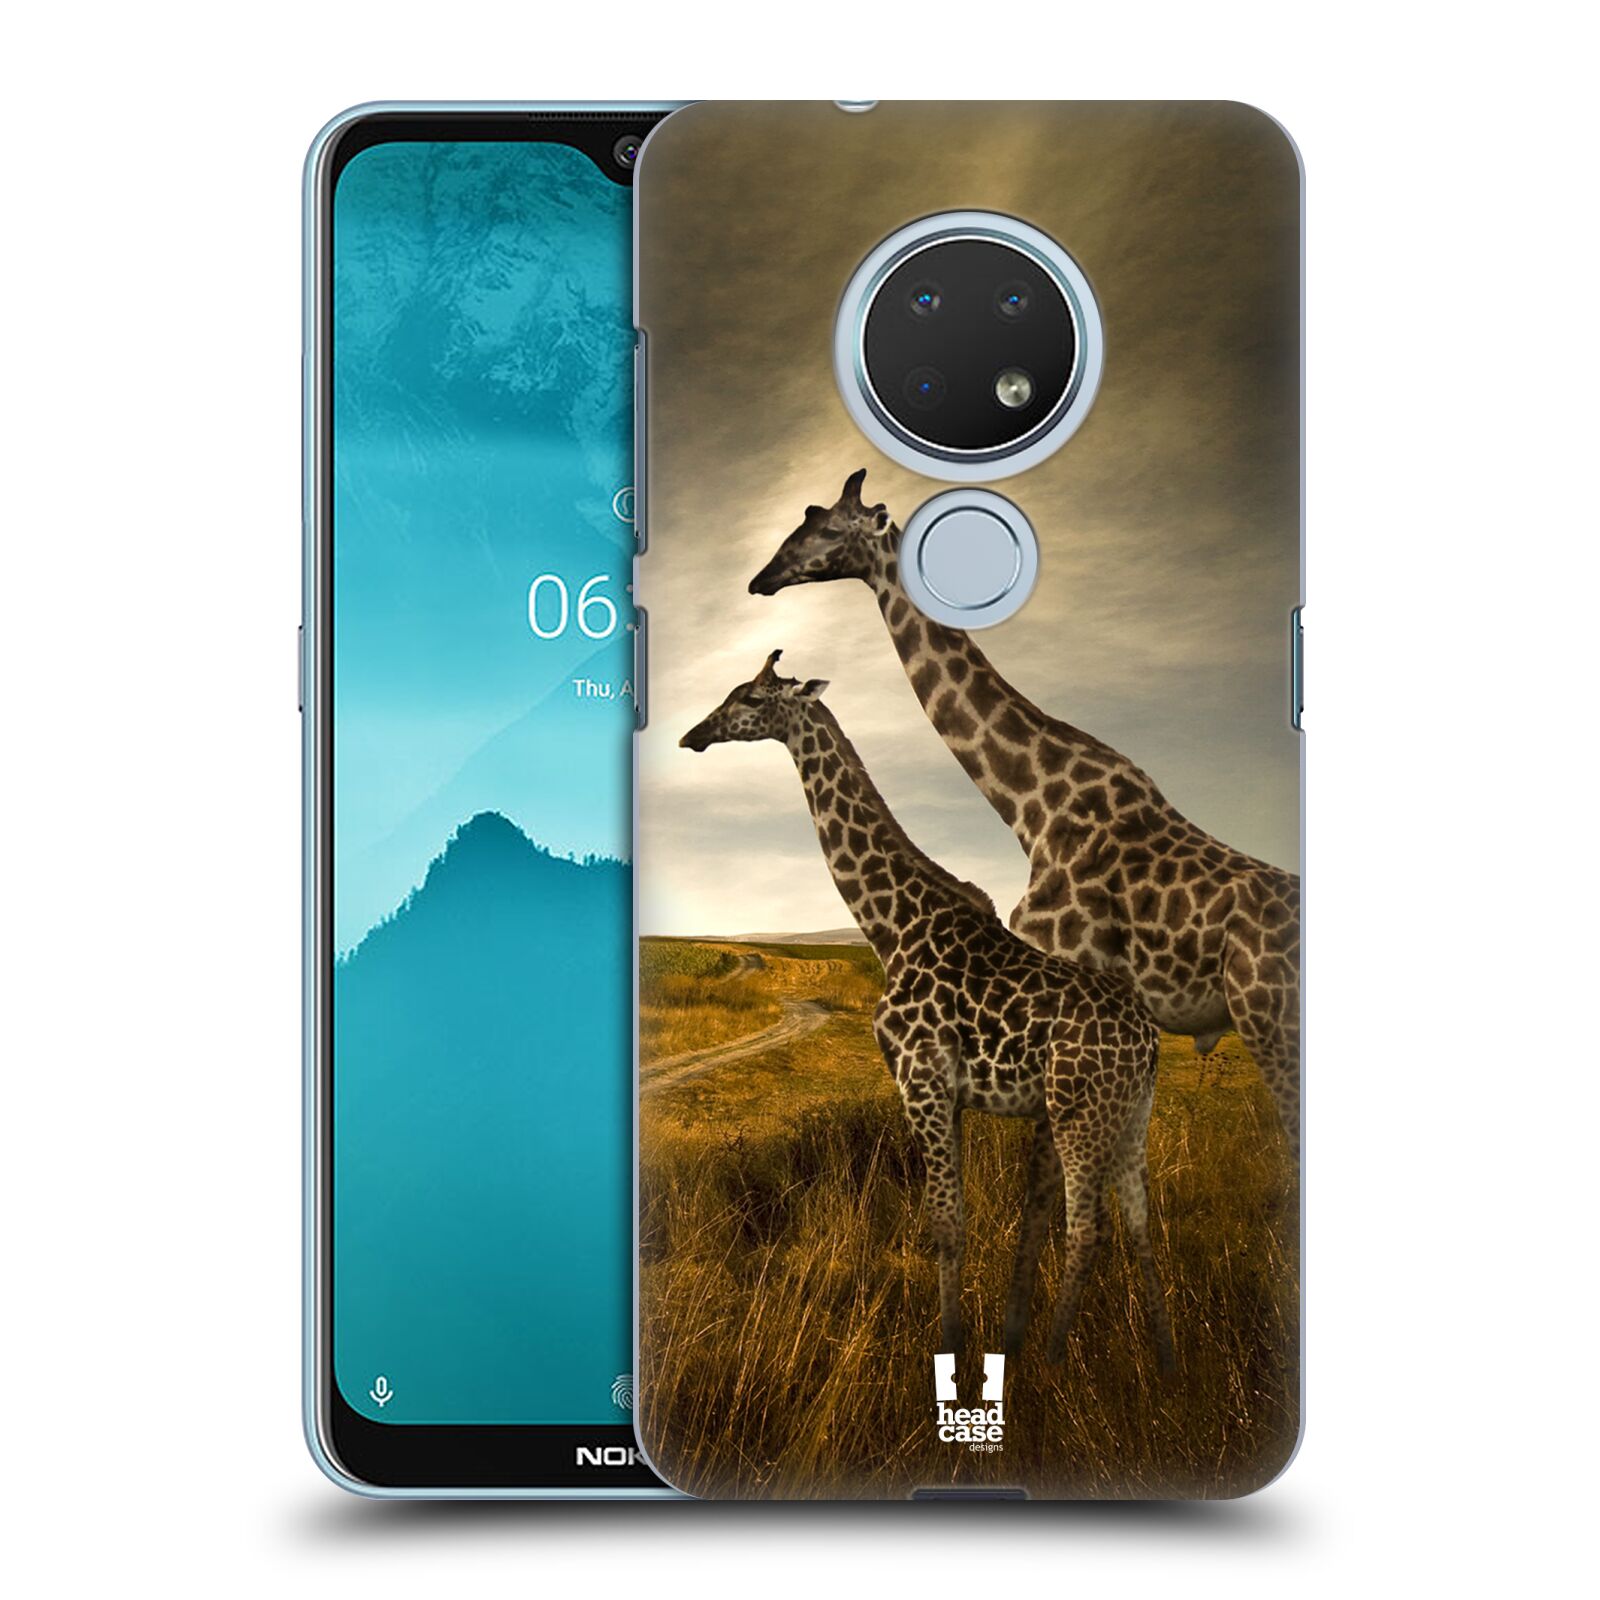 Pouzdro na mobil Nokia 6.2 - HEAD CASE - vzor Divočina, Divoký život a zvířata foto AFRIKA ŽIRAFY VÝHLED